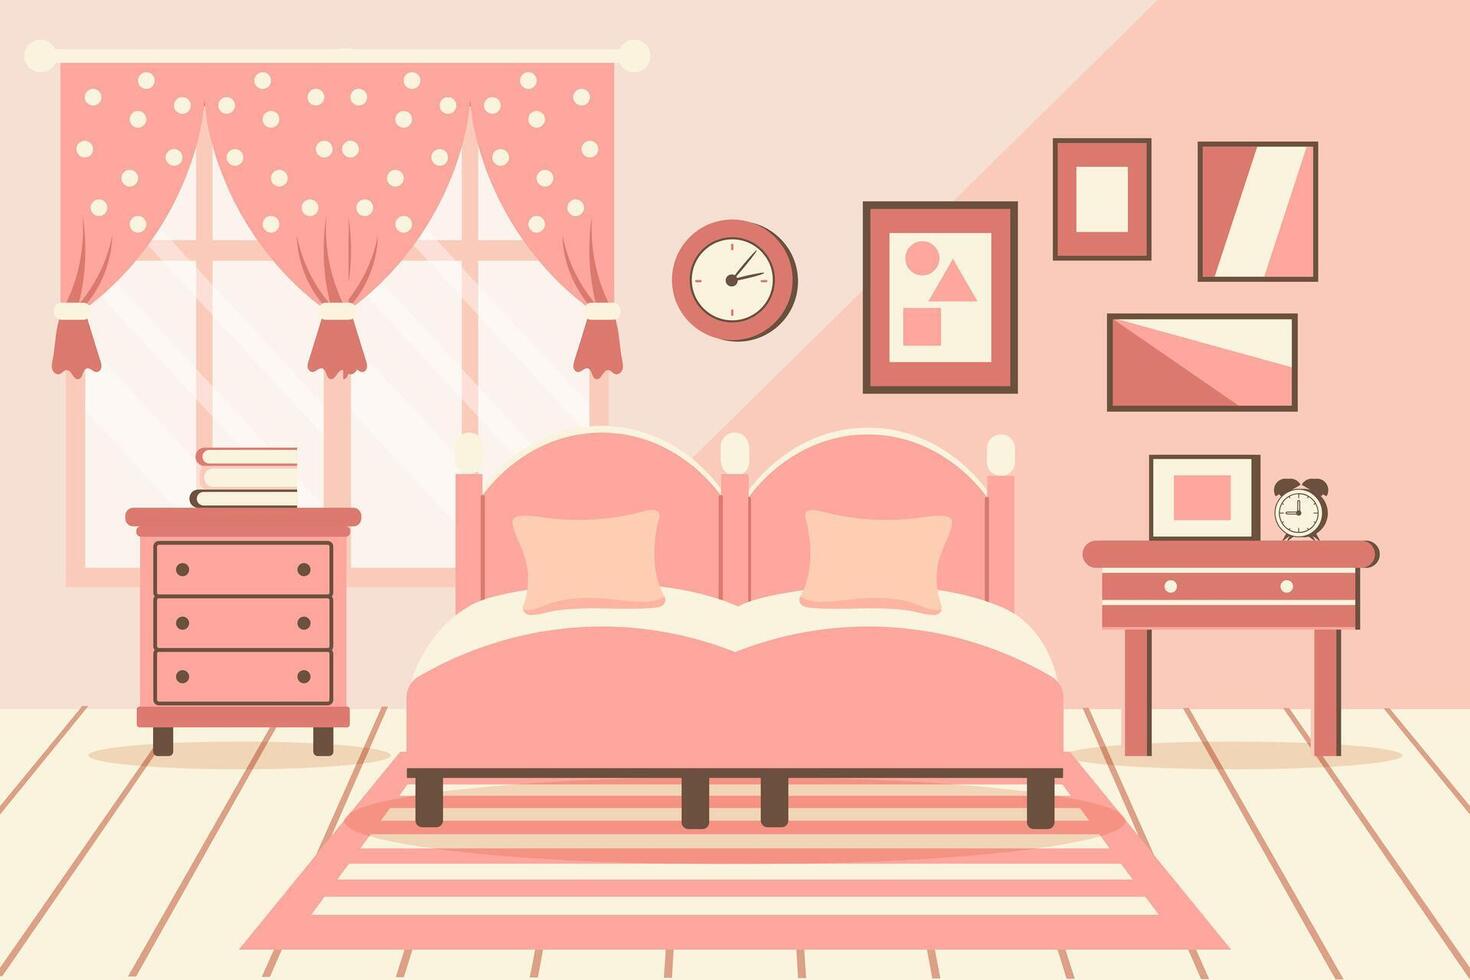 acogedor dormitorio. dormitorio interior cama con almohadas, alfombra, cabecera mesas, armario, ventana. interior concepto. plano ilustración. vector